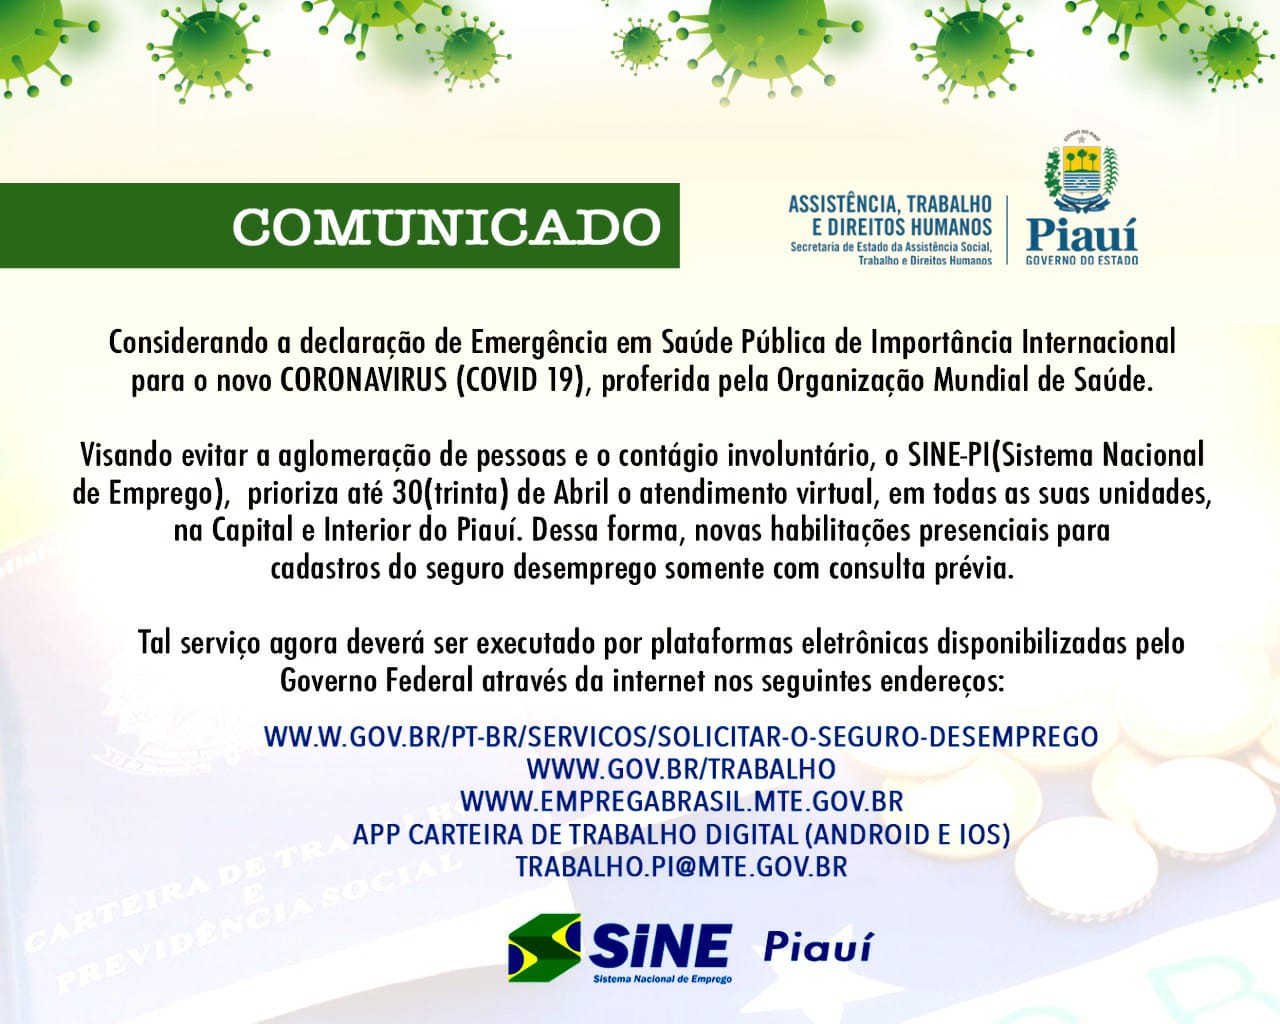 Sine Piauí suspende atendimento presencial até dia 30 de abril (Foto: Reprodução)